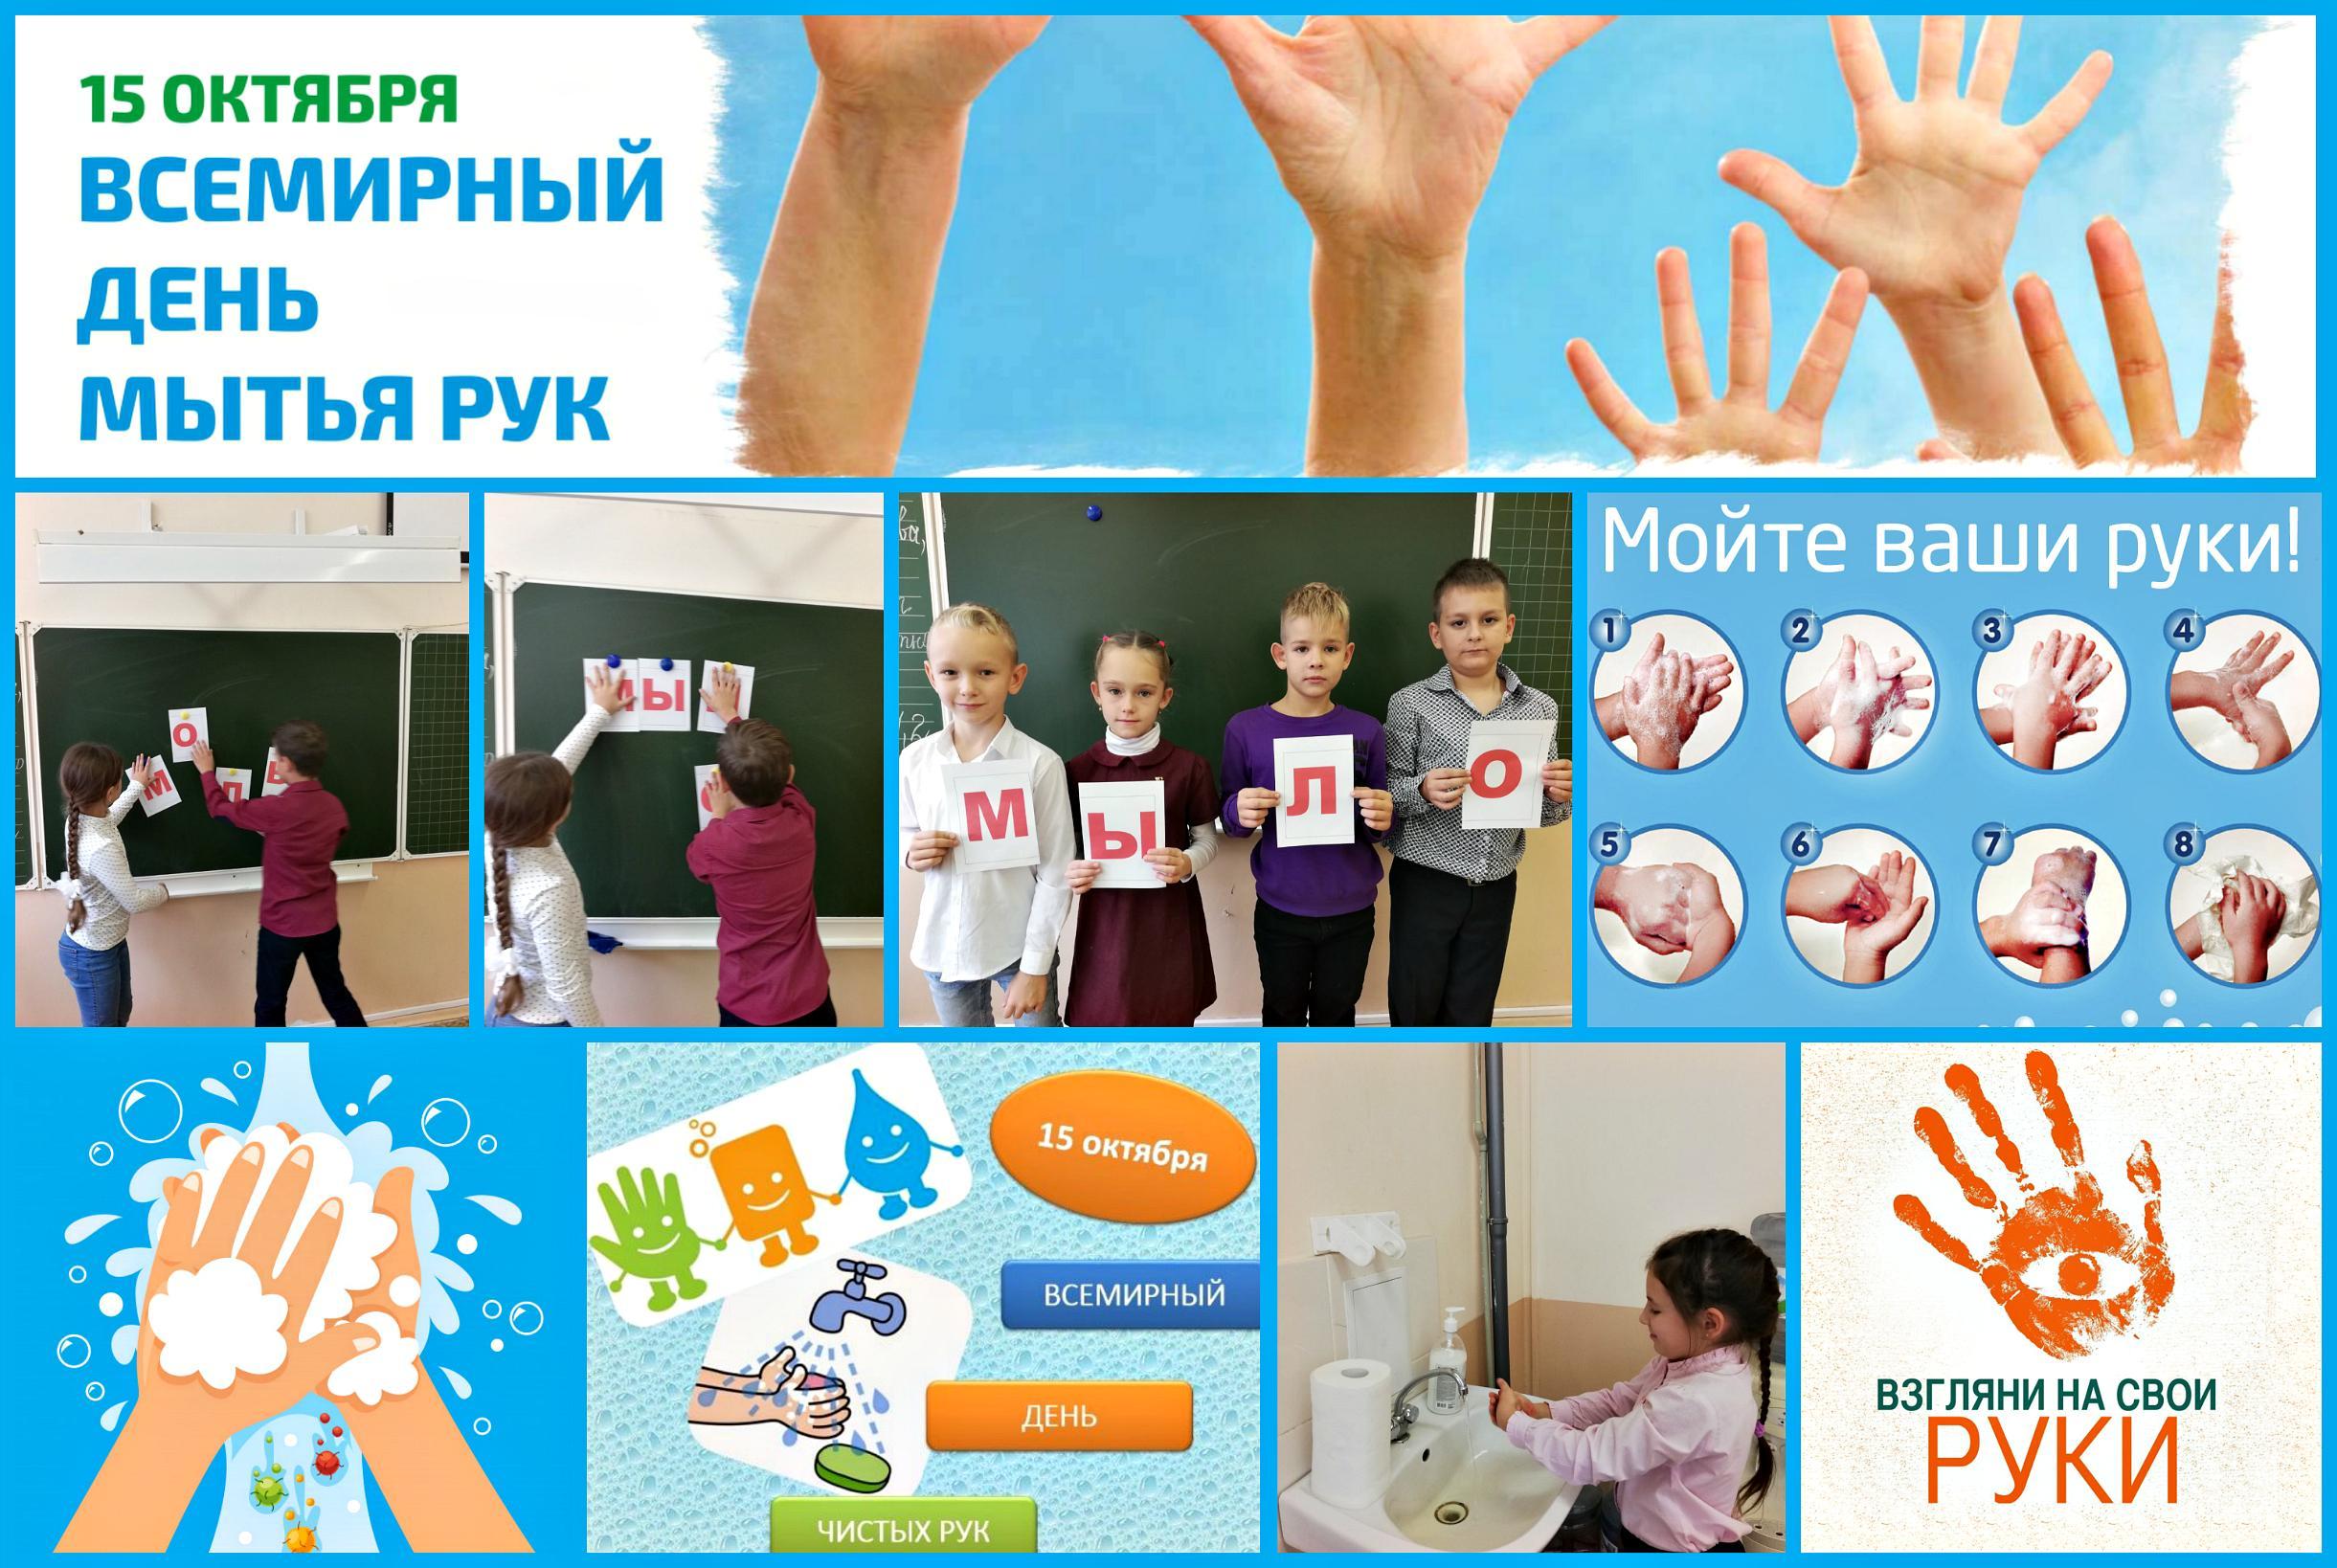 15 октябрь 2013. 15 Октября Всемирный день мытья рук. Мытье рук 15 октября. День чистых рук плакат. Всемирный день мытья рук в детском саду.